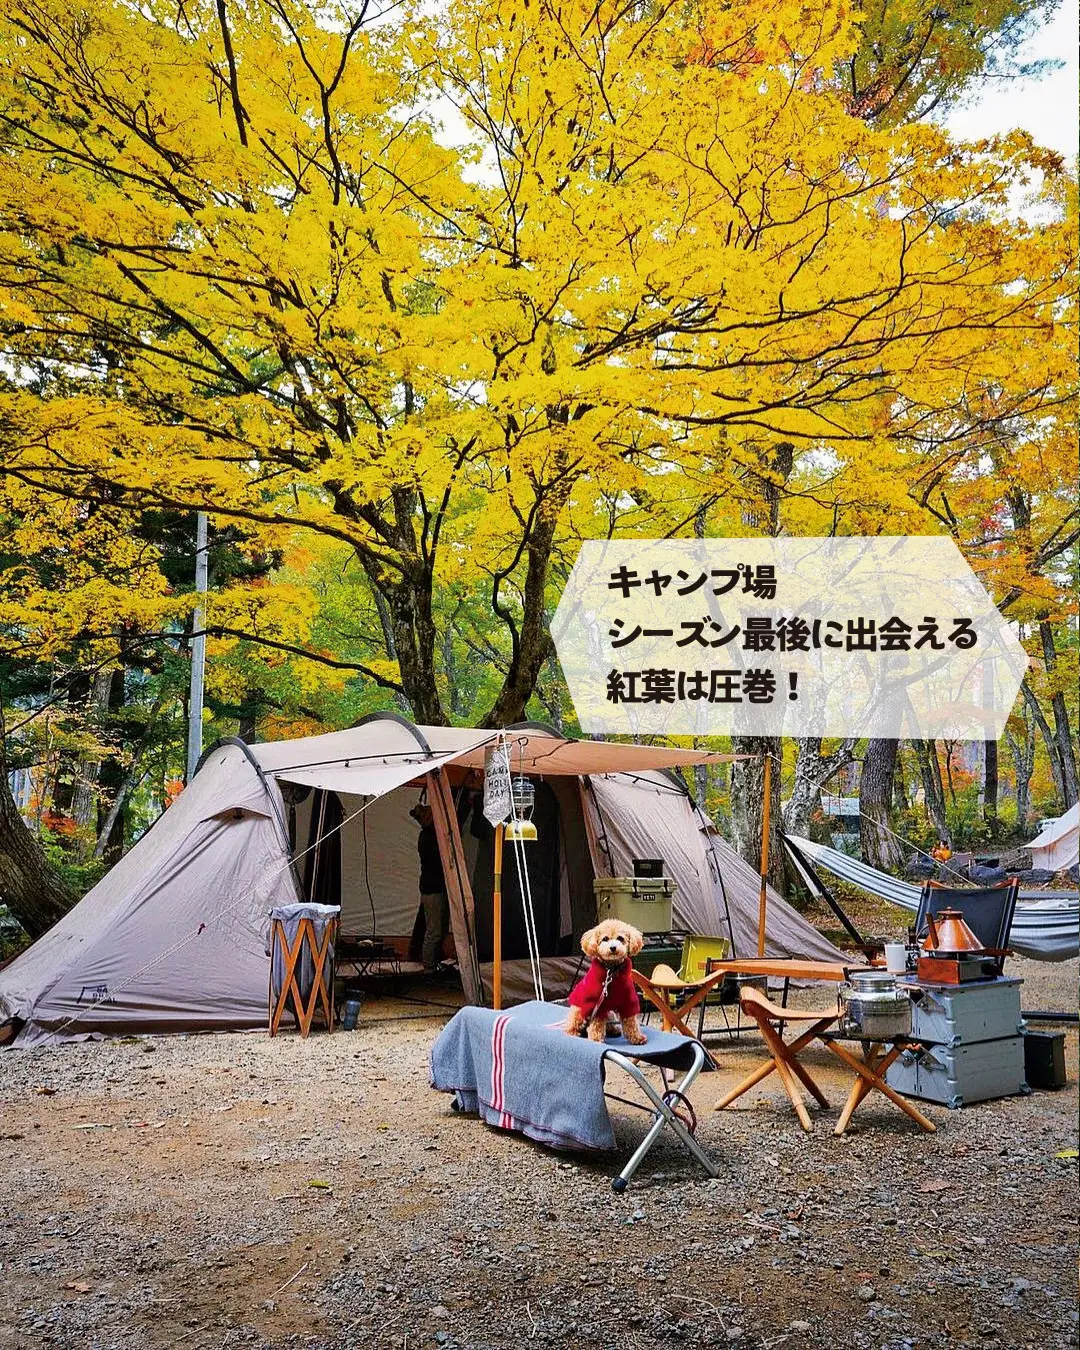 【岐阜】ココ、ホントは教えたくない💦美しすぎる林間キャンプ場の画像 (2枚目)